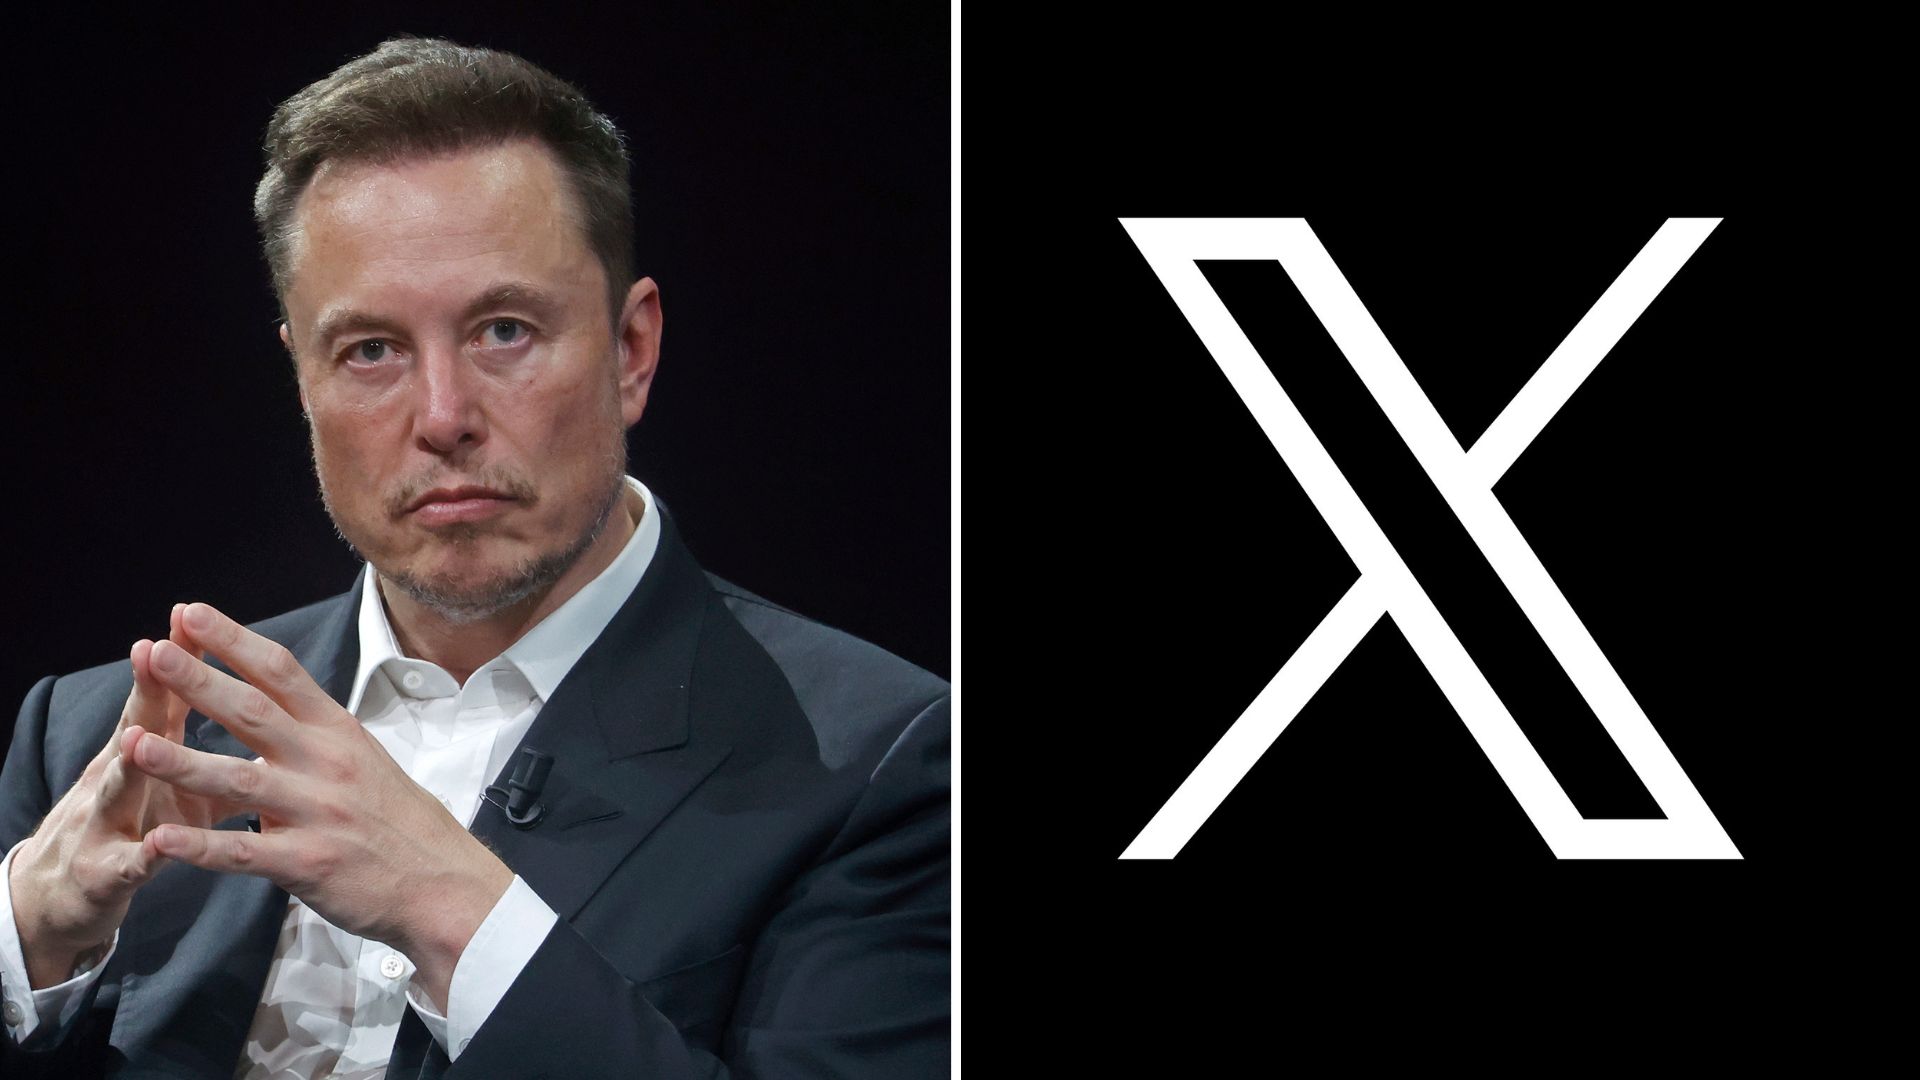 Bye-bye birdie: Elon Musk rebrands Twitter as 'X' - National | Globalnews.ca